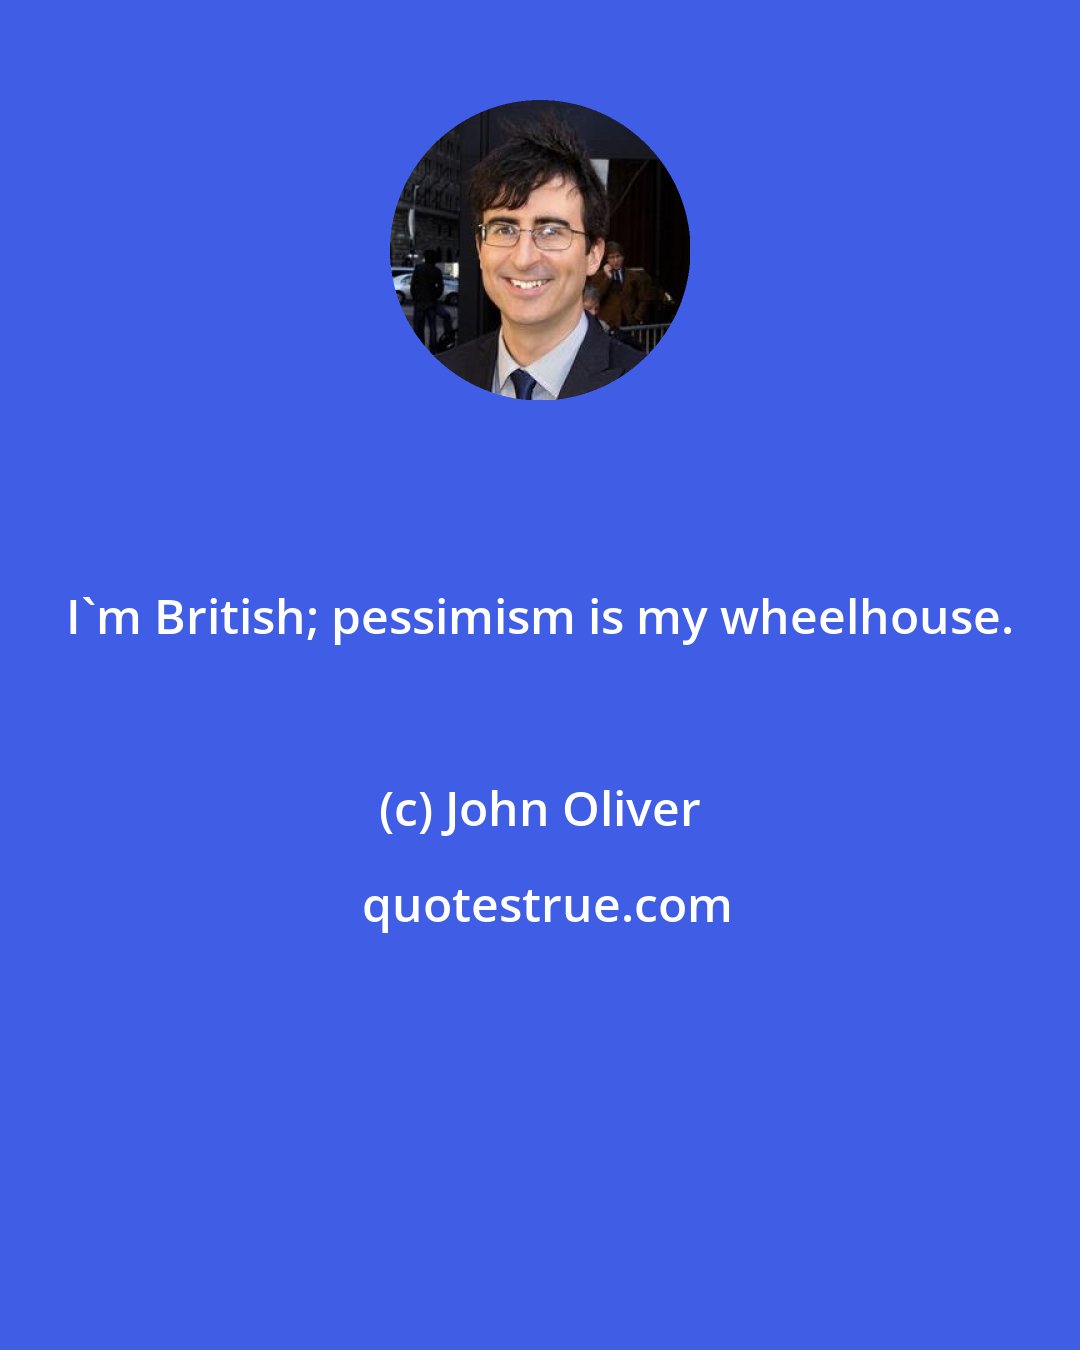 John Oliver: I'm British; pessimism is my wheelhouse.